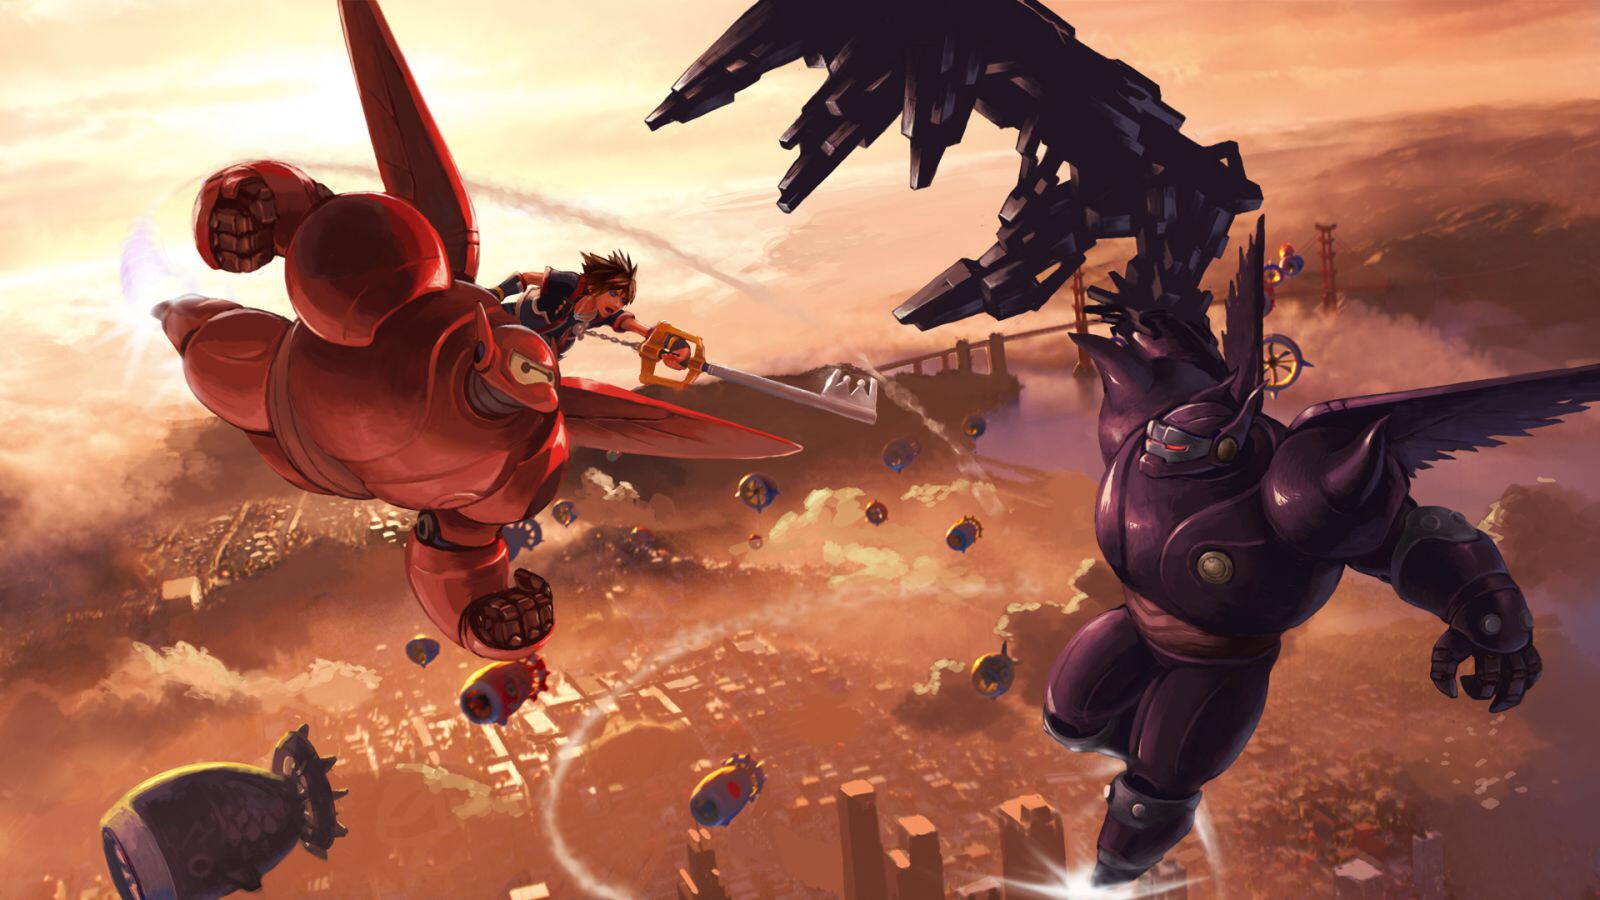 Kingdom Hearts III Features a Big Hero 6 World